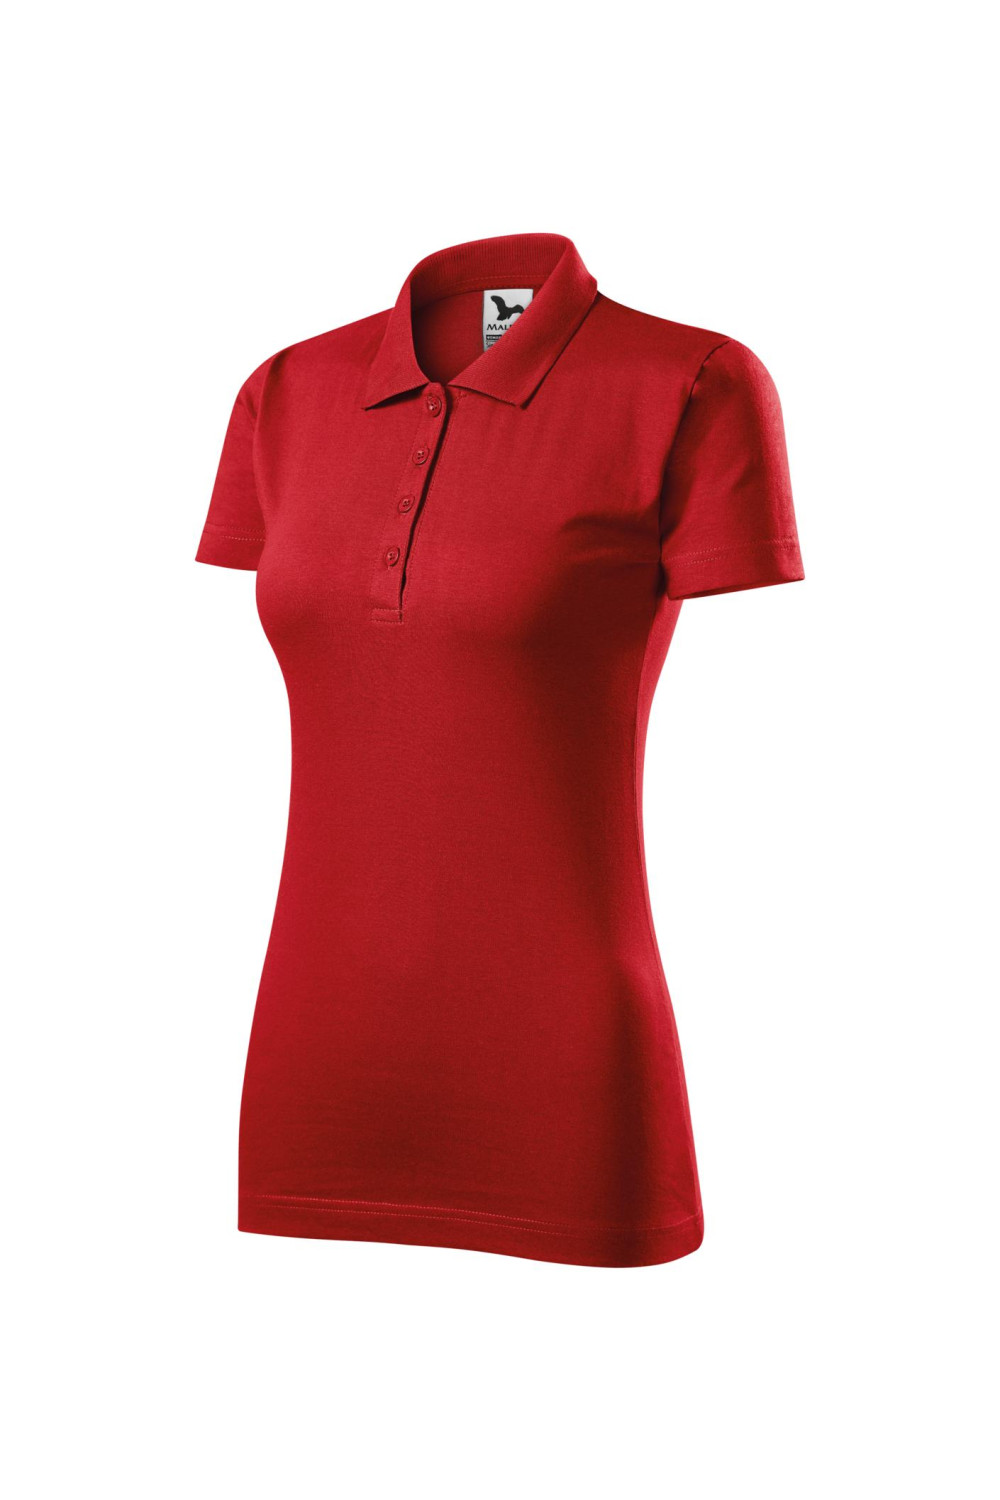 SINGLE J. 223 MALFINI ADLER Koszulka polo damska klasyczna 100% bawełna czerwony